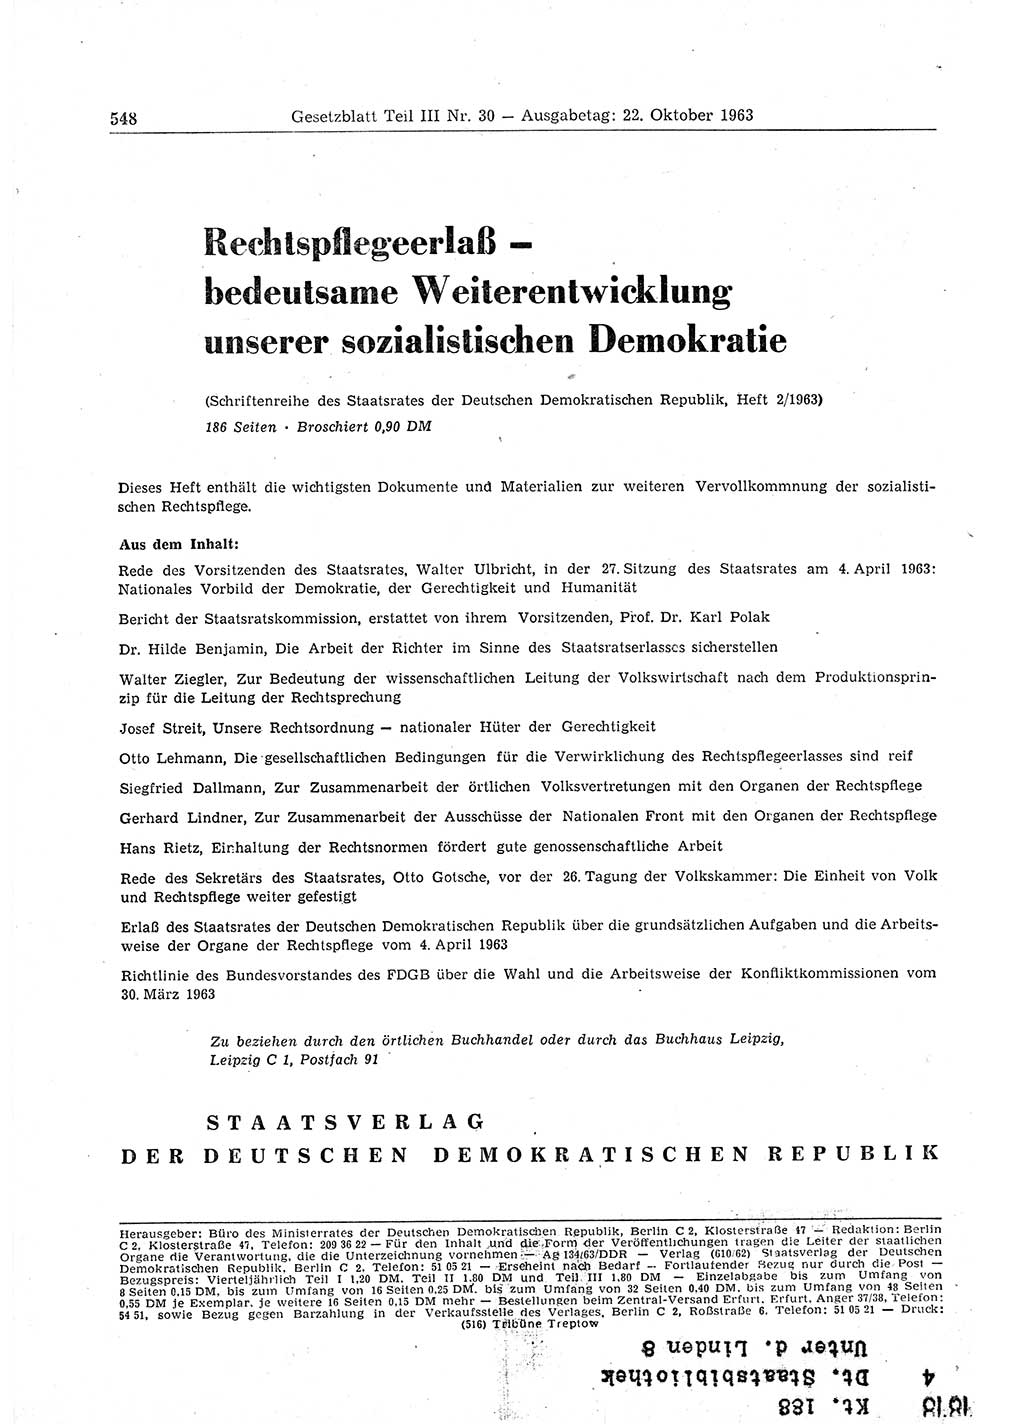 Gesetzblatt (GBl.) der Deutschen Demokratischen Republik (DDR) Teil ⅠⅠⅠ 1963, Seite 548 (GBl. DDR ⅠⅠⅠ 1963, S. 548)